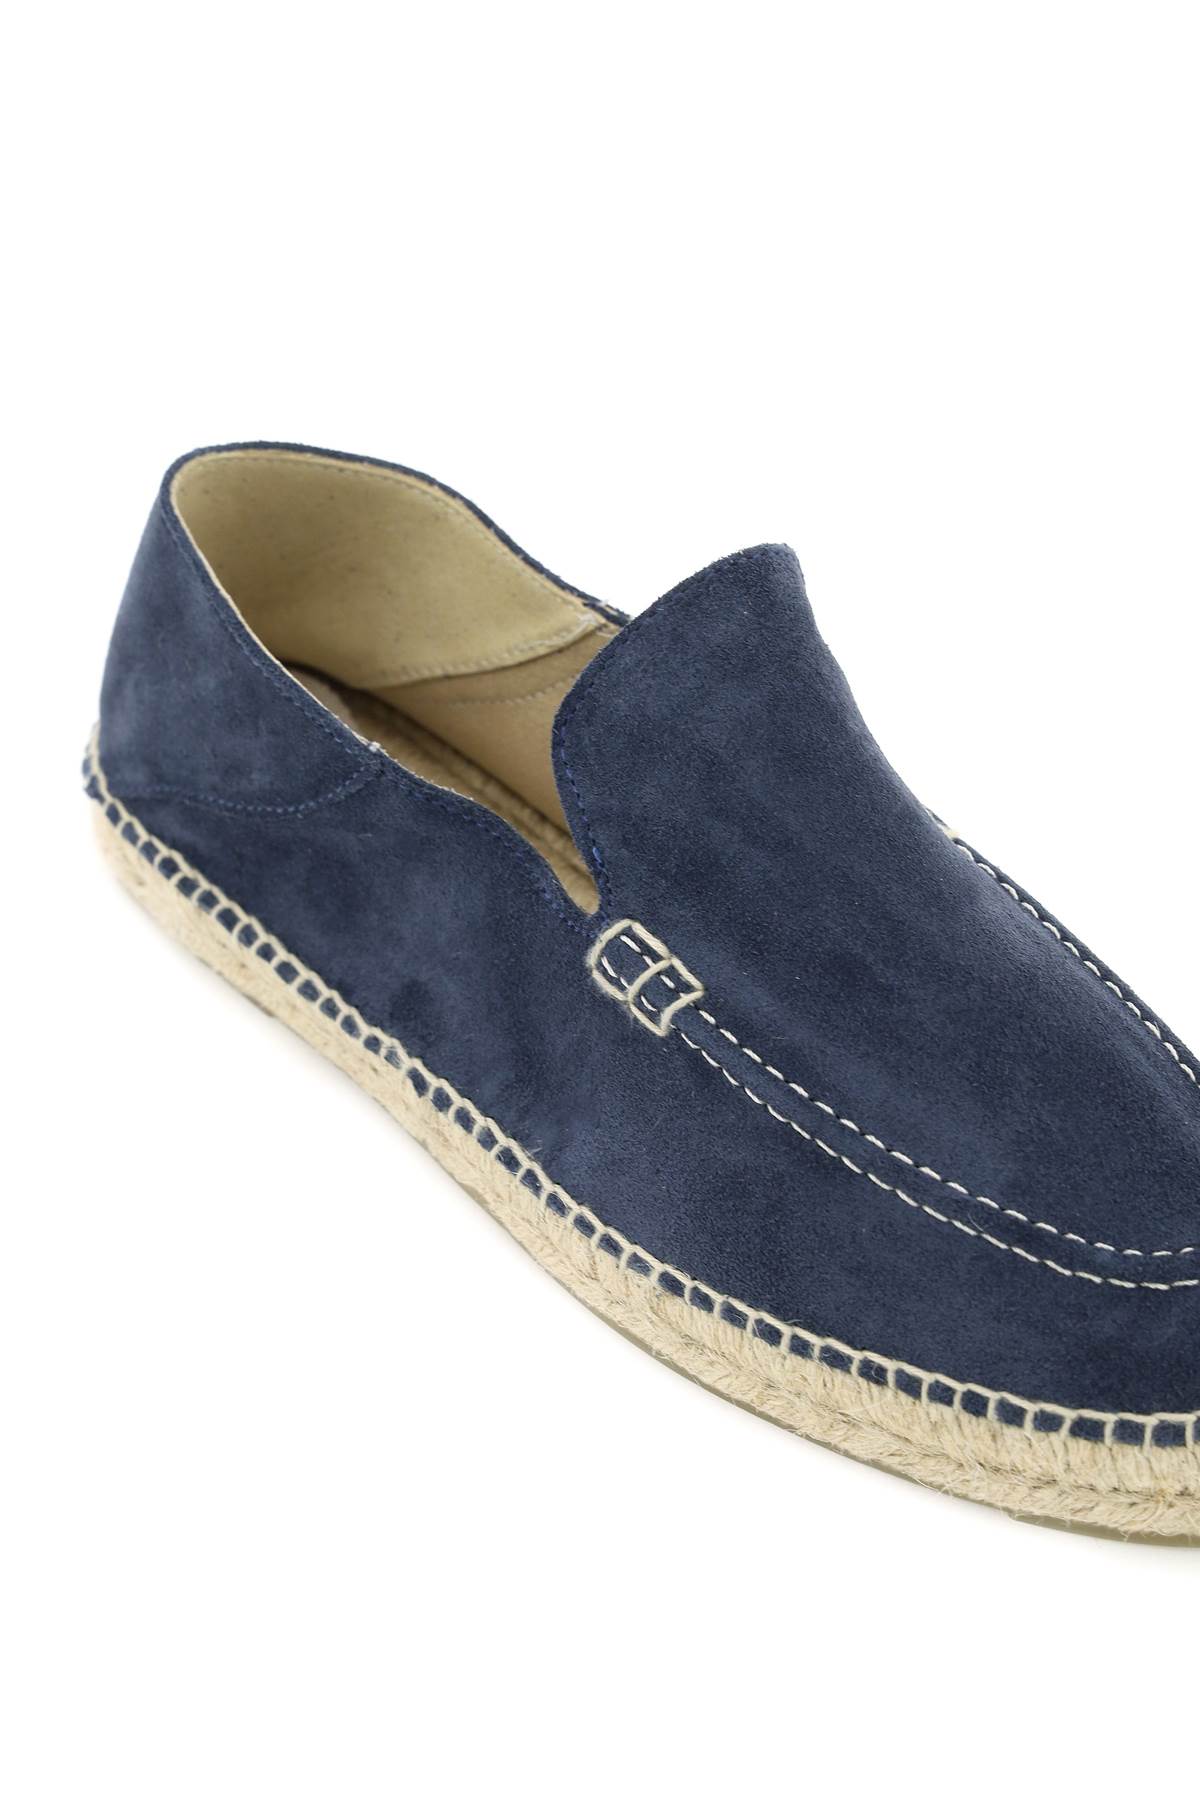 Shop Manebi Espadrilles Loafers In Navy (blue)